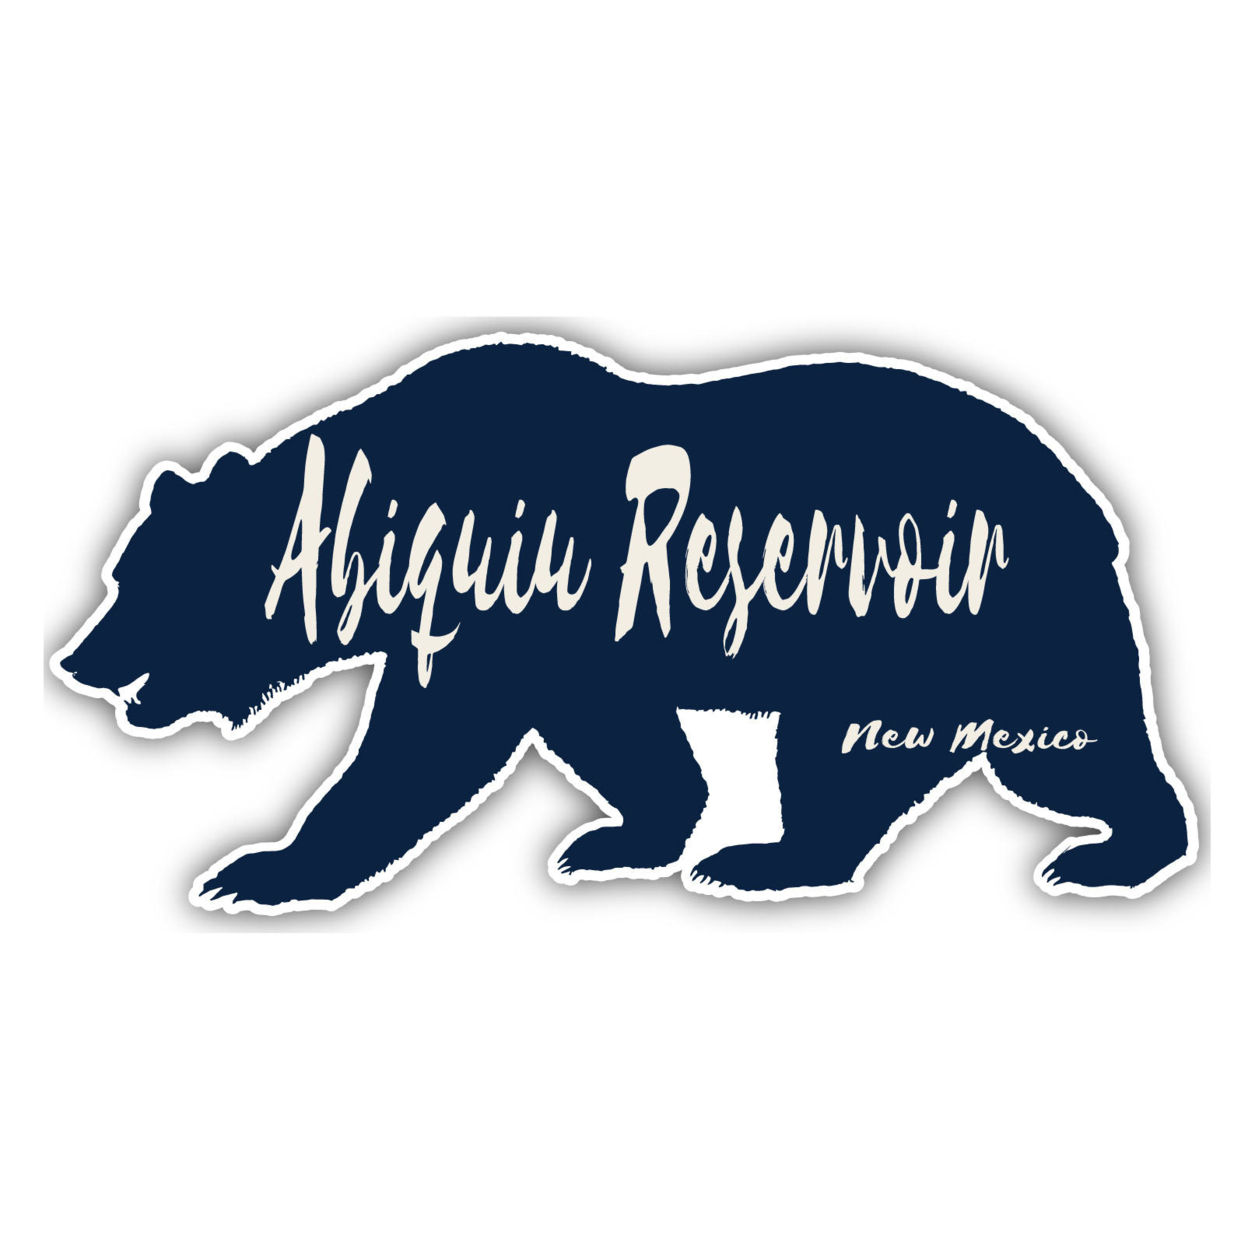 Abiquiu Reservoir New Mexico Souvenir Decorative Stickers (Choose Theme And Size) - Single Unit, 8-Inch, Bear